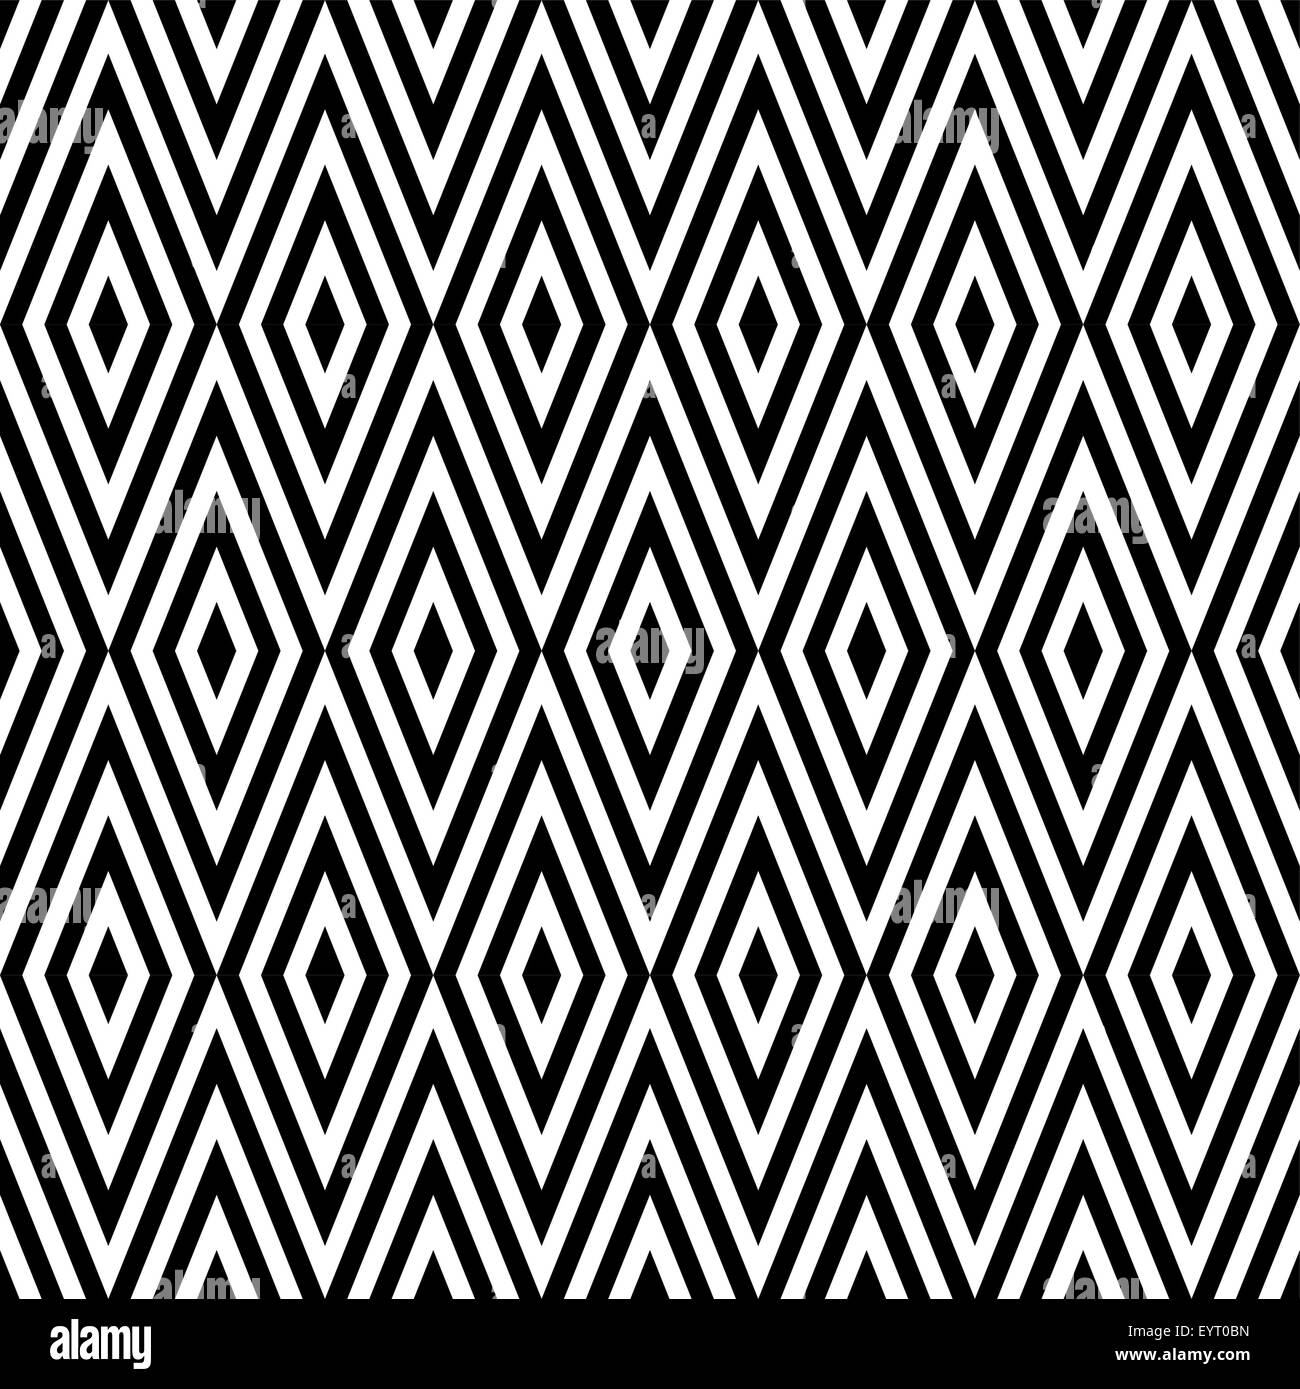 Moyenne géométrique abstrait noir et blanc rétro vintage en zigzag de fond transparent. Idéal pour tissu, papier d'emballage et d'impression Illustration de Vecteur